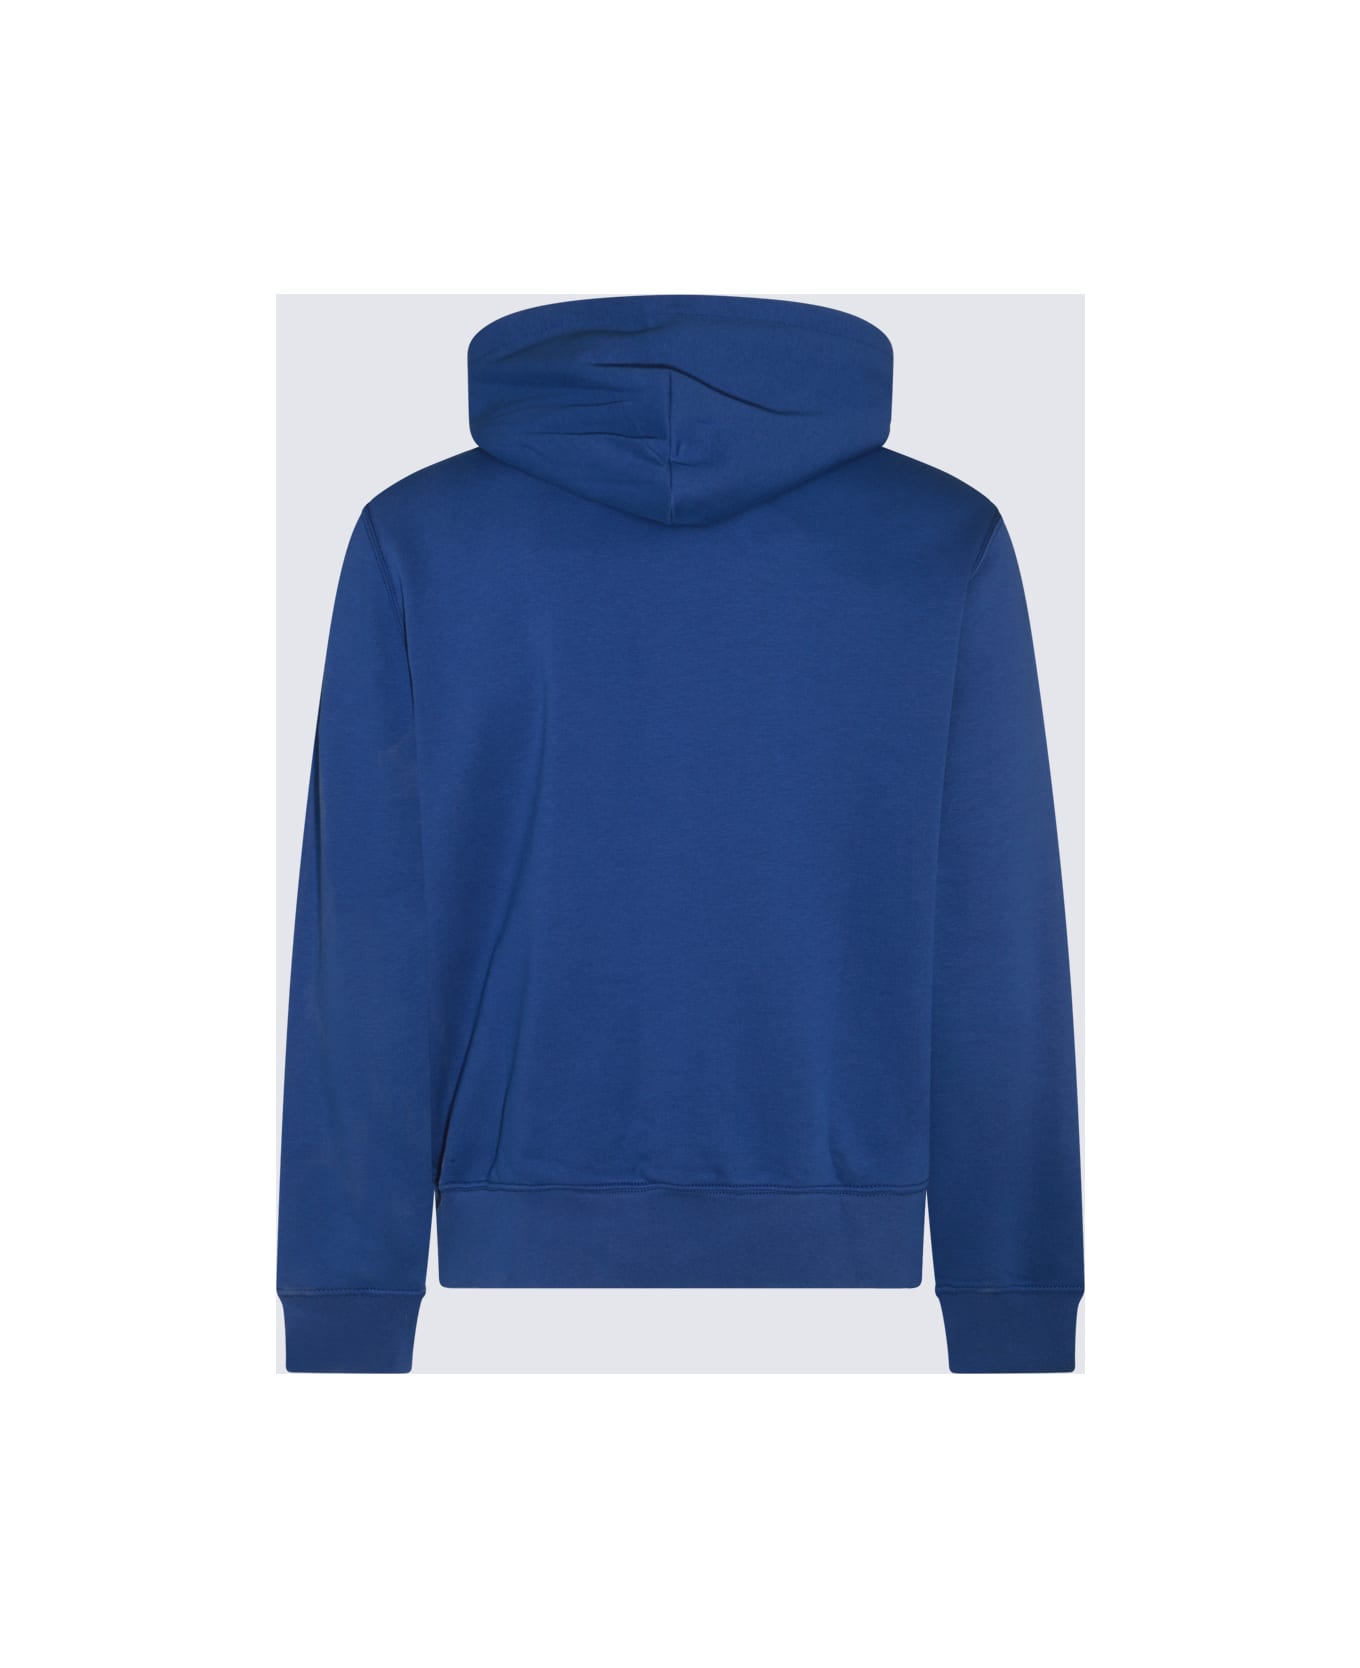 Polo Ralph Lauren Blue Cotton Sweatshirt - SP24 BEACH ROYAL HRTG BEAR